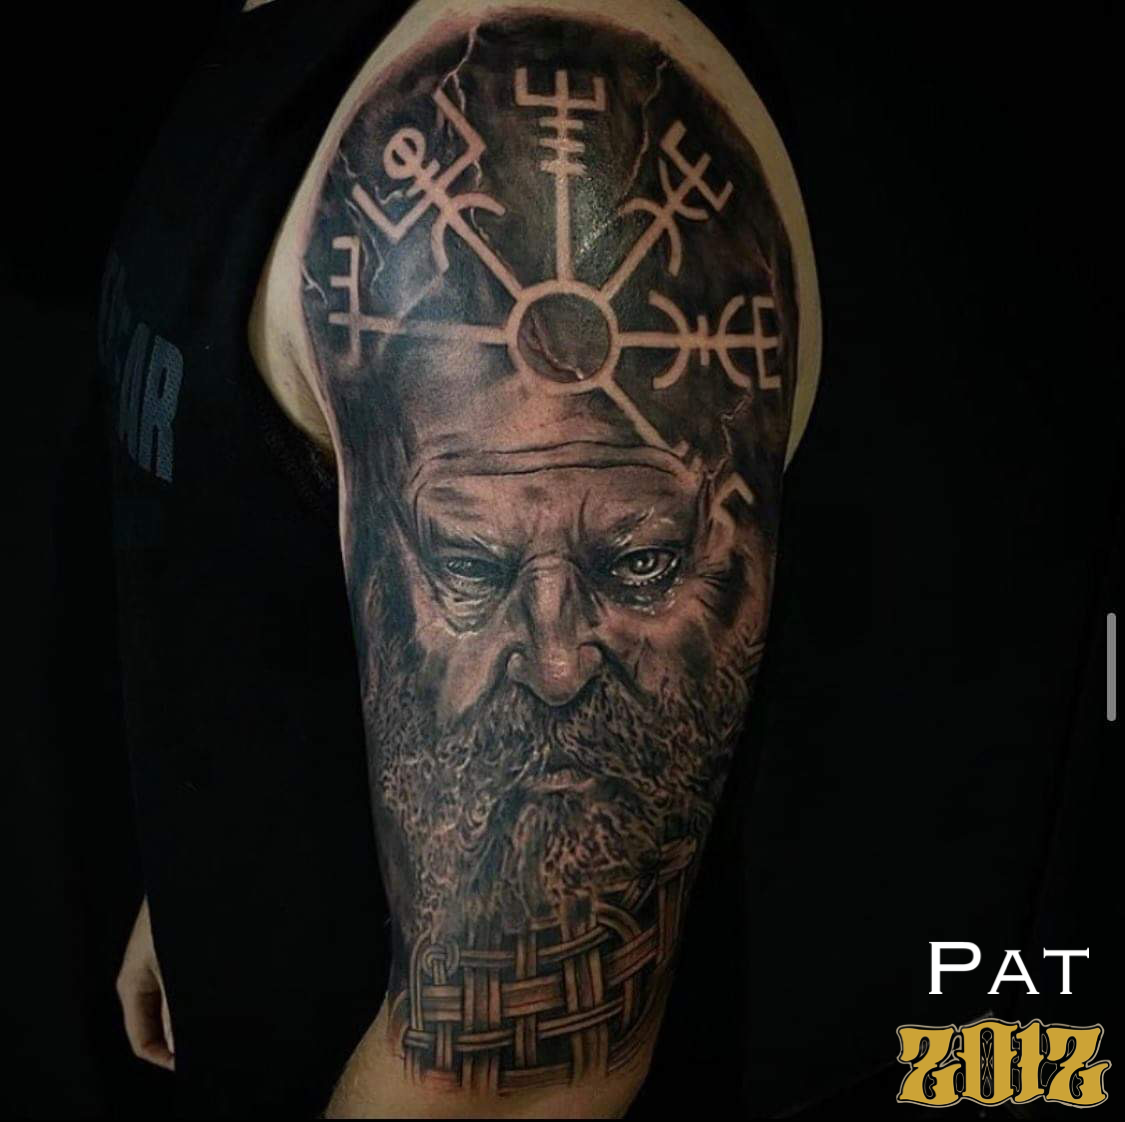 Pat Thompson | Tattoo Artist Newcastle | 2012 Tattoo Company